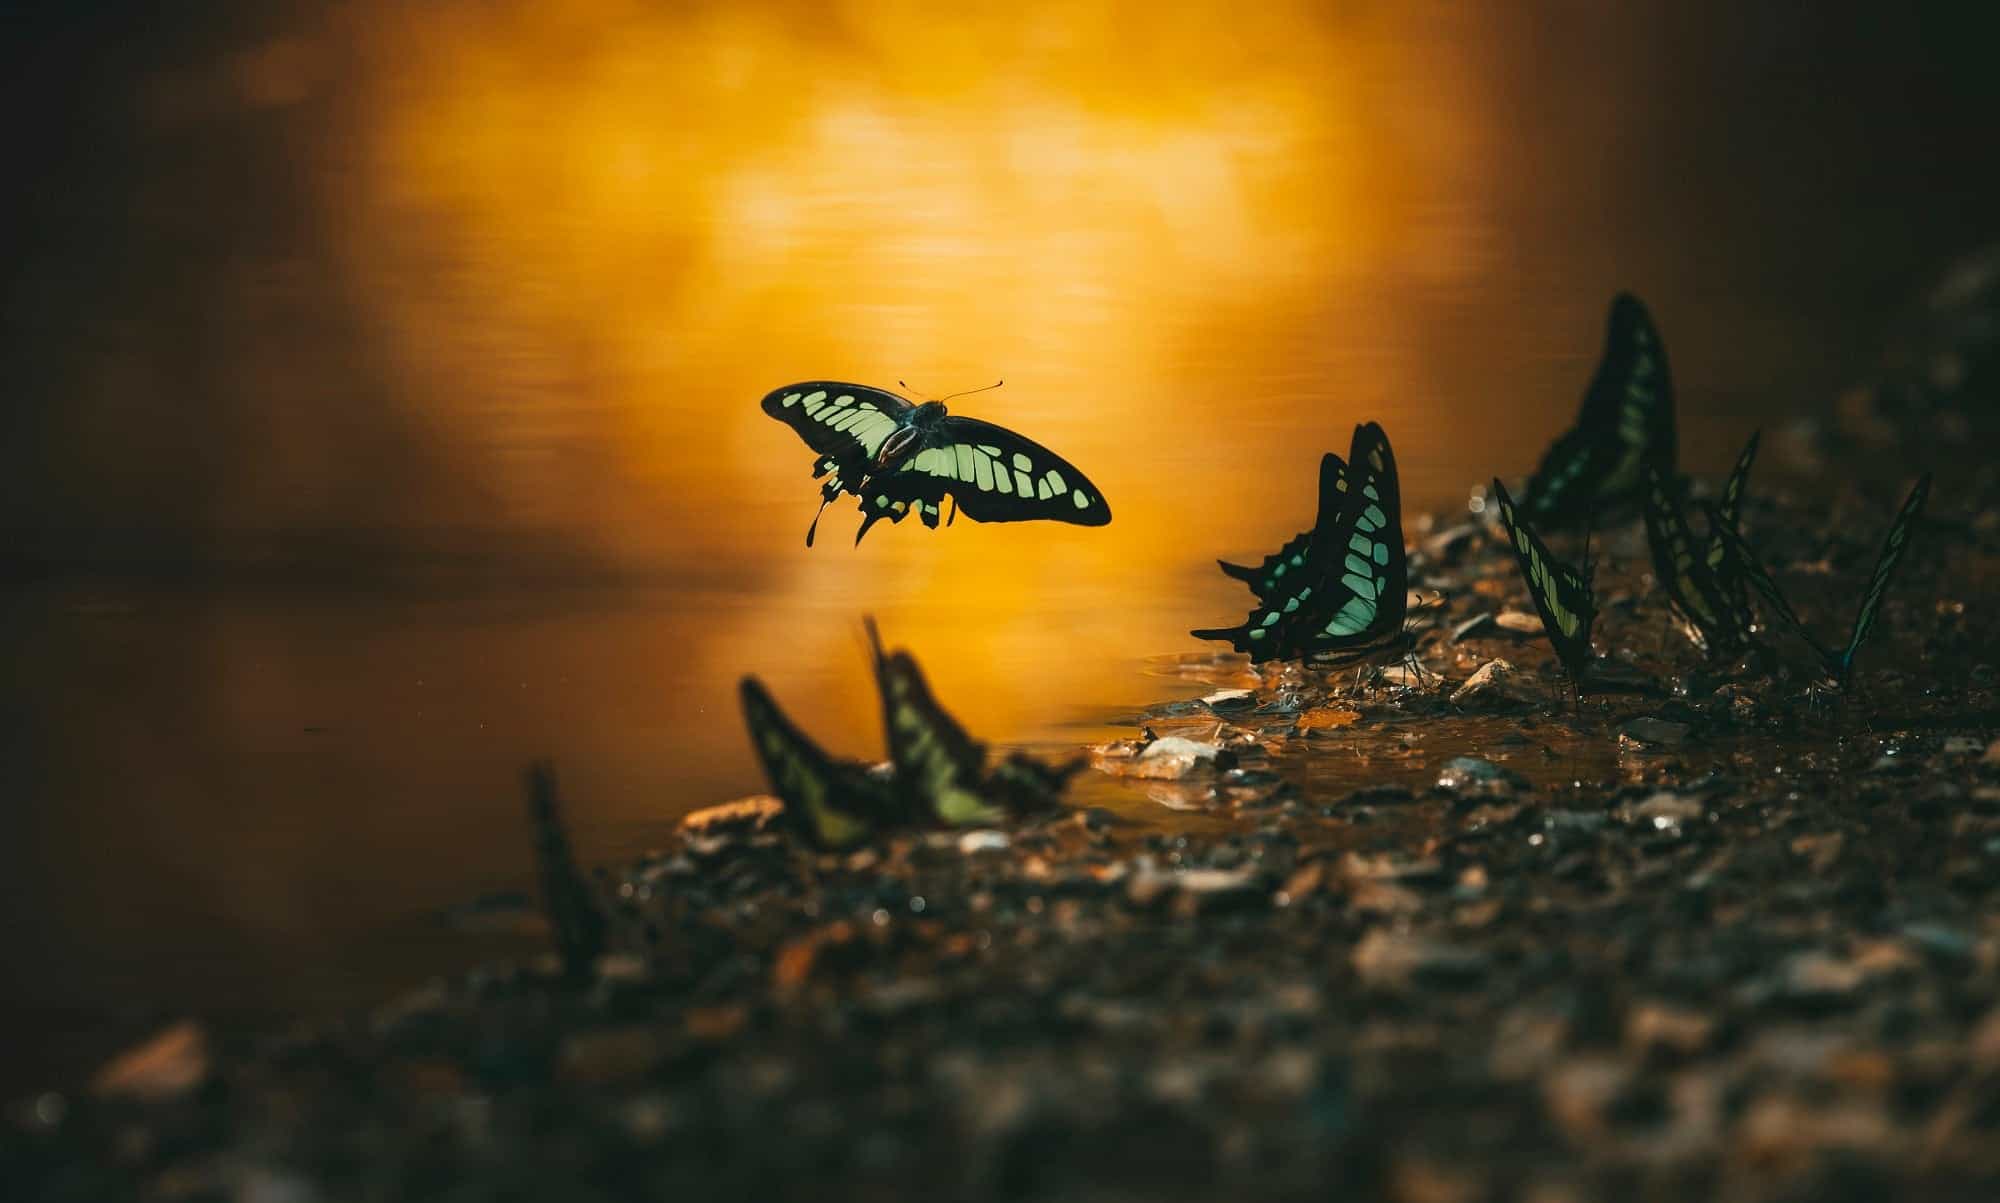 صورة مشاركة في مسابقة التصوير الفوتوغرافي تظهر فراشة صفراء مخططة تطير حول بركة ماء يسطع عليها ضوء الشمس.